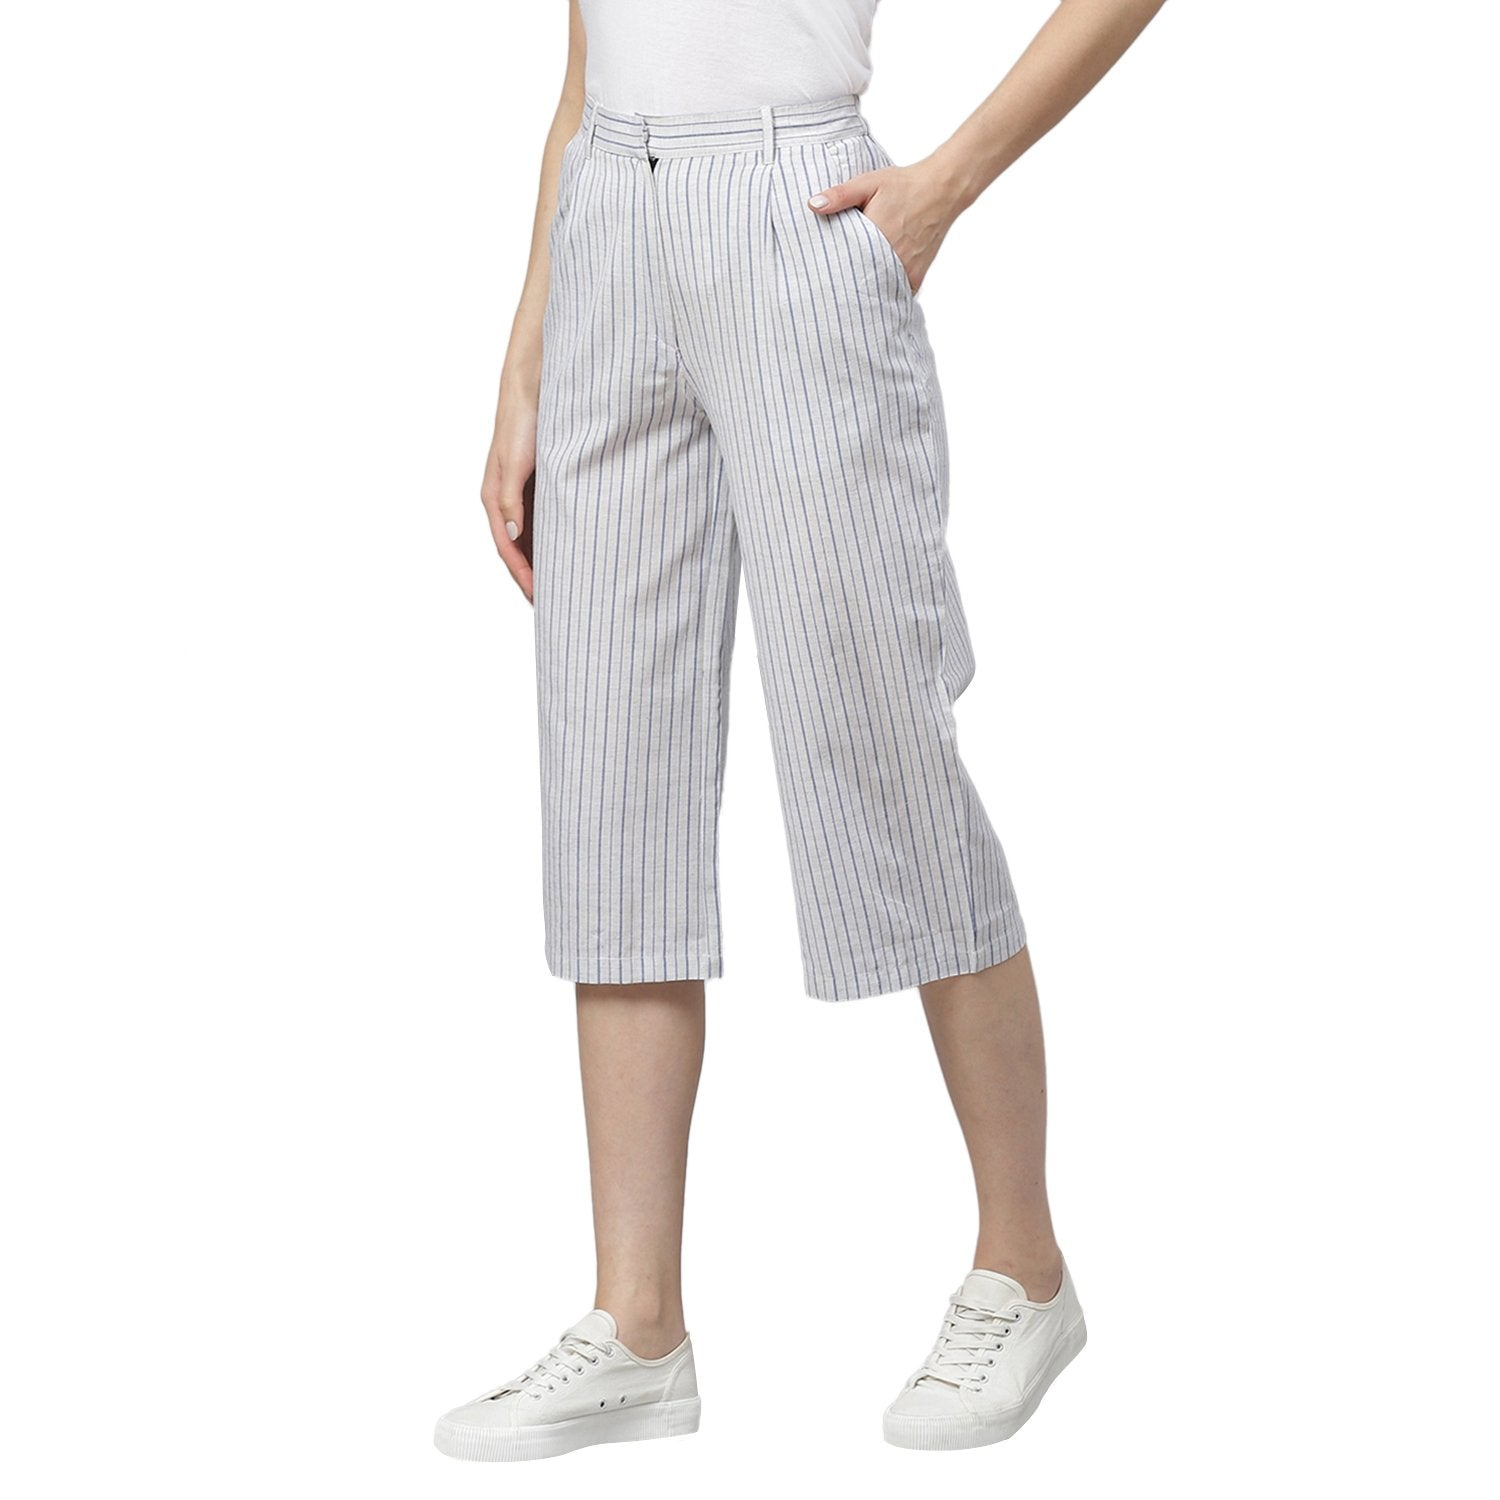 Women White Striped Cotton Culottes Trousers by Myshka (1 Pc Set)